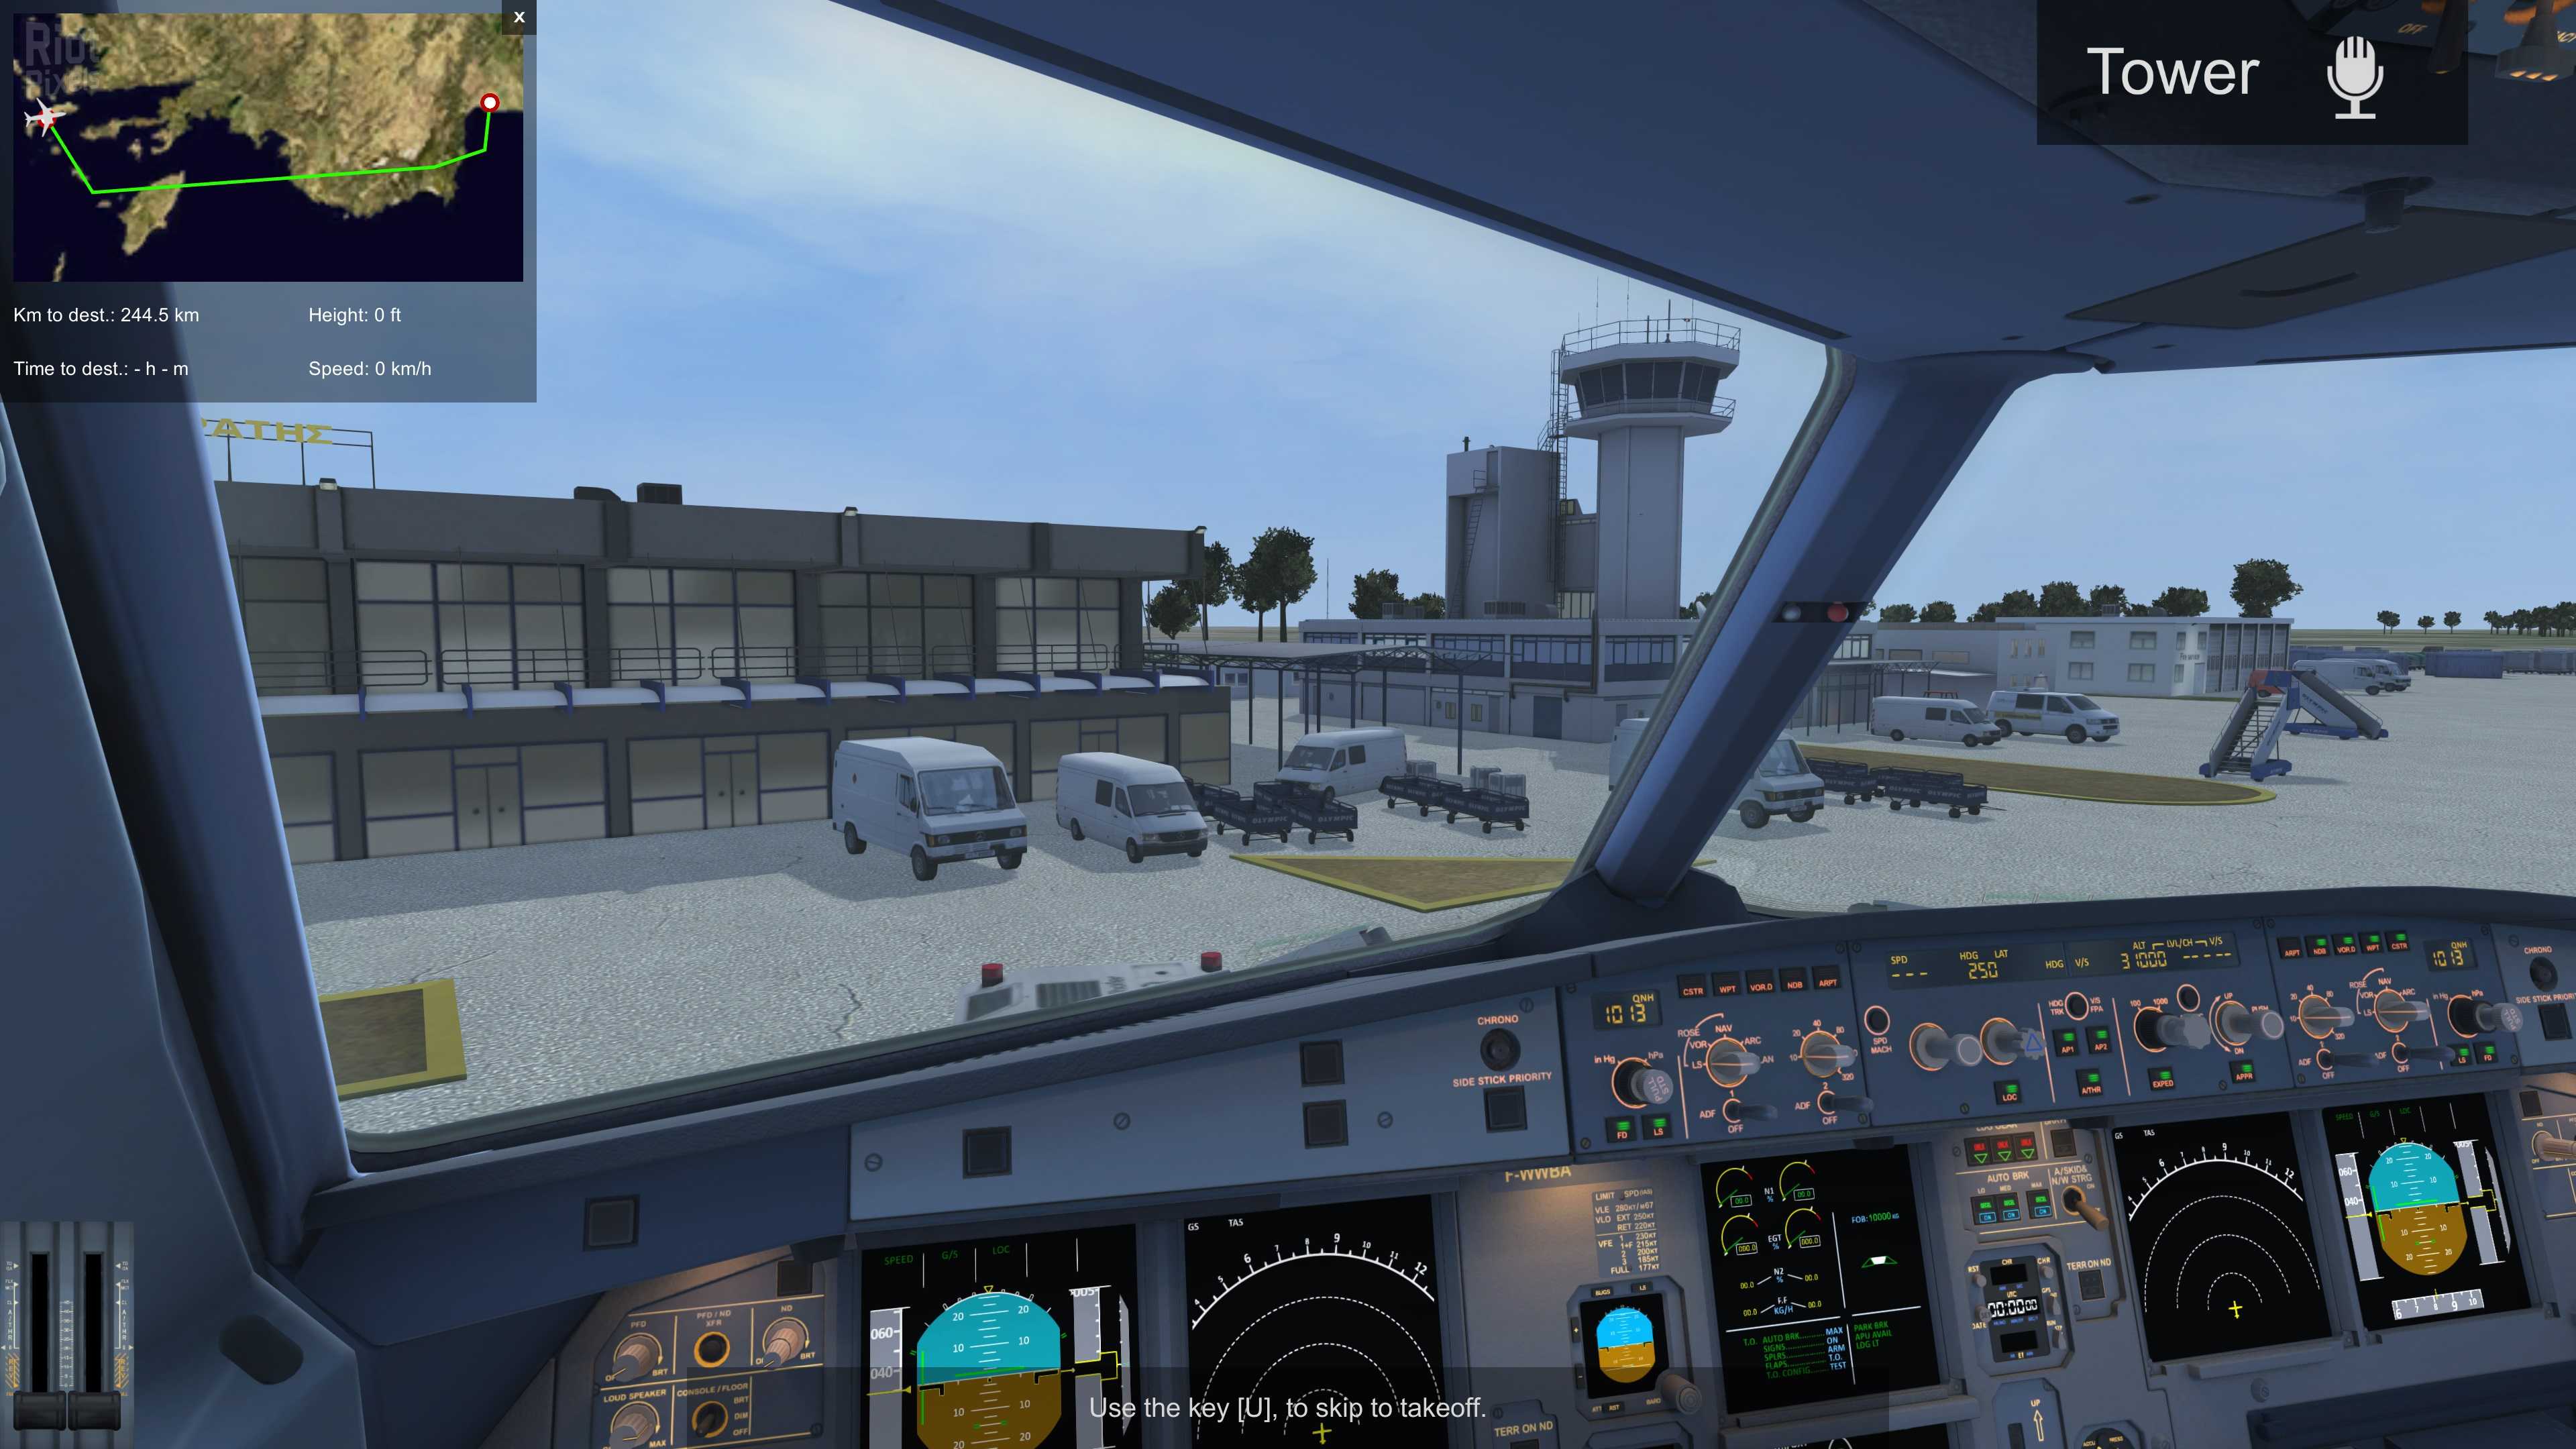 Играть про симуляторы. A320 Simulator. Ready for take off - a320 Simulator. Take off симулятор. A320 Airbus игра.